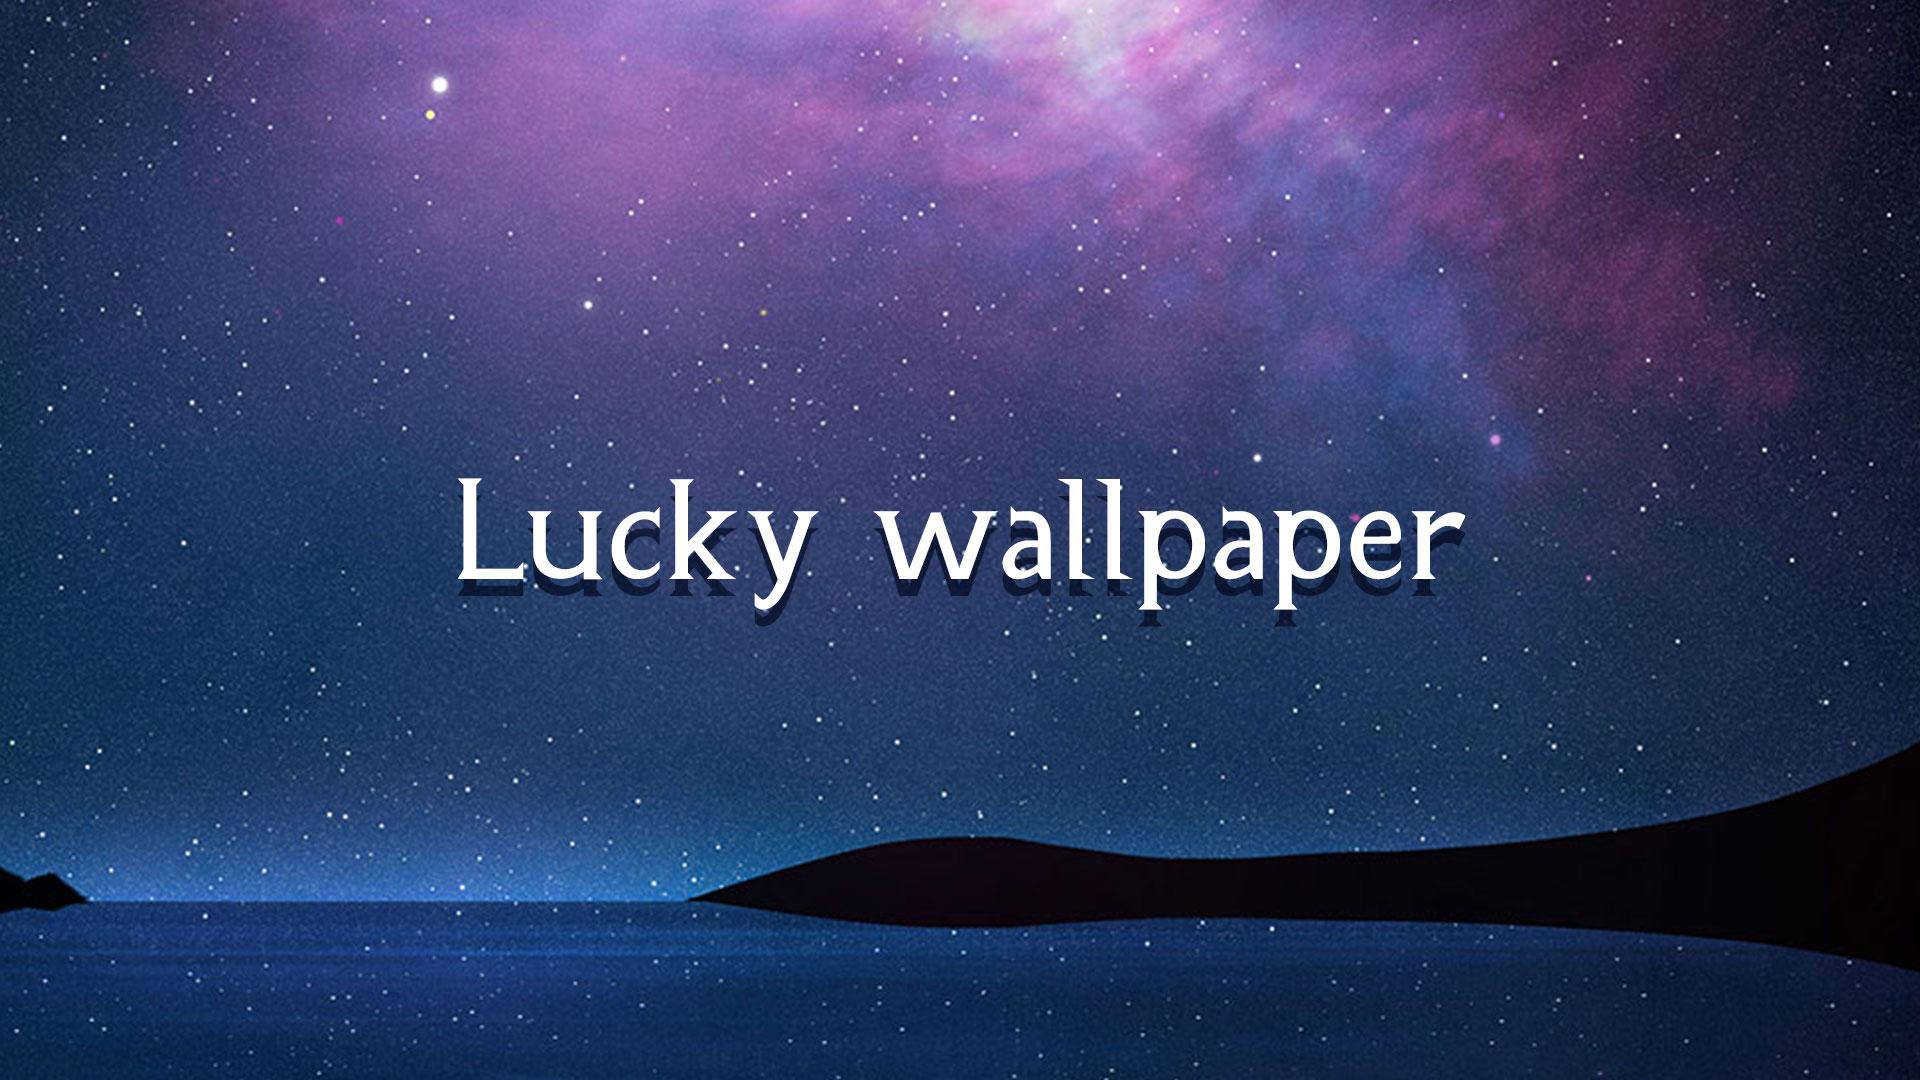 Lucky - Space wallpaper là lựa chọn hoàn hảo cho những ai yêu thích không gian và vũ trụ. Những bức tranh nền đầy sáng tạo với những hình ảnh về vũ trụ sẽ giúp cho không gian sống của bạn trở nên độc đáo và thú vị hơn. Hãy tải ngay cho Android của bạn để trải nghiệm!